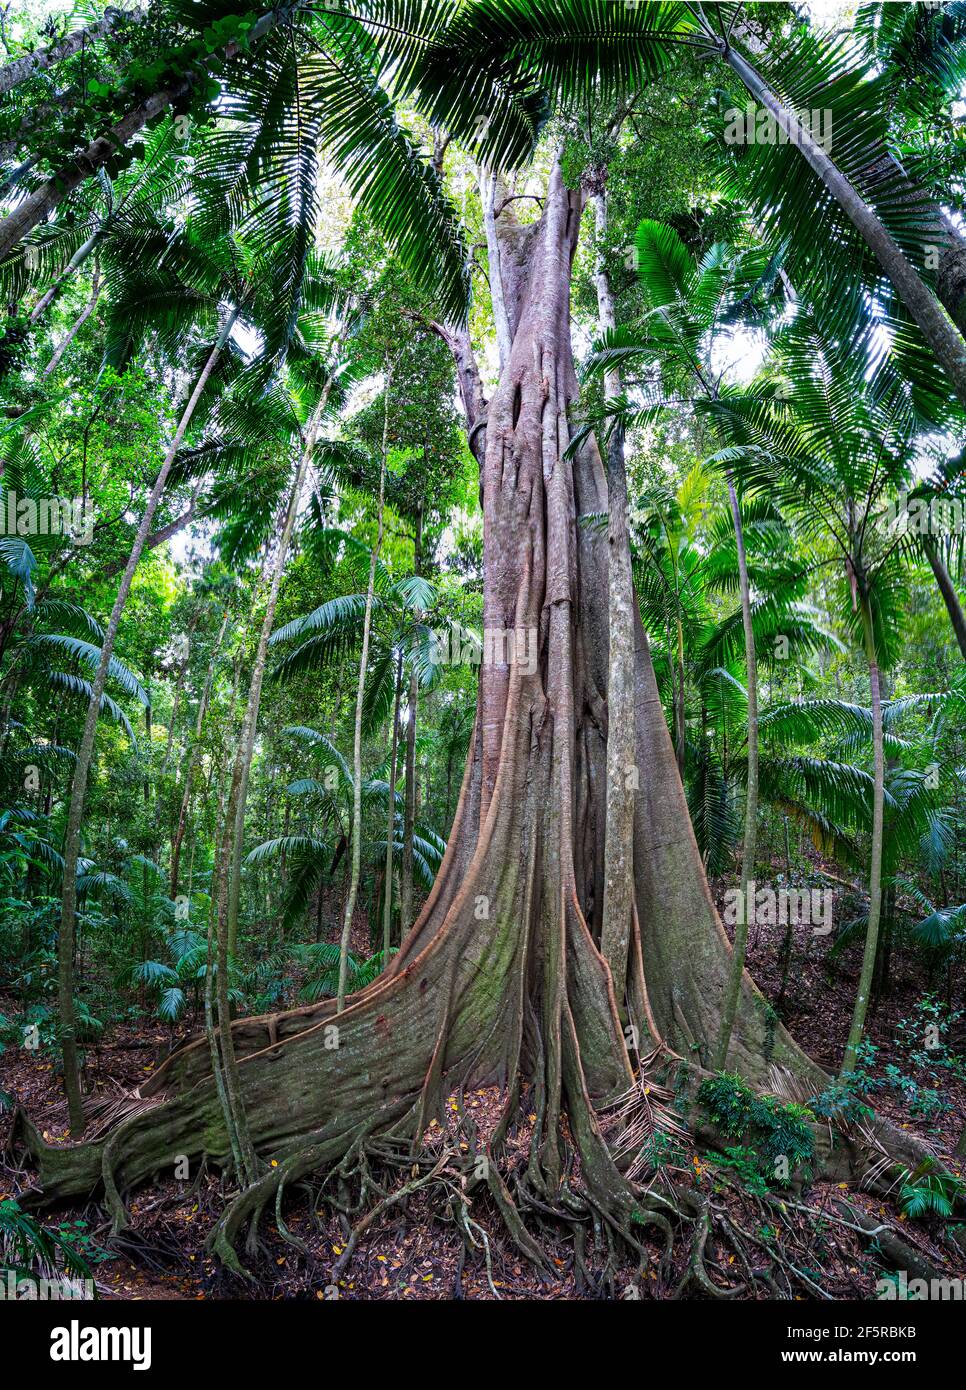 Racine d'arbre de contrefort, forêt tropicale humide Tropics, Mission Beach Nord Queensland Australie Banque D'Images